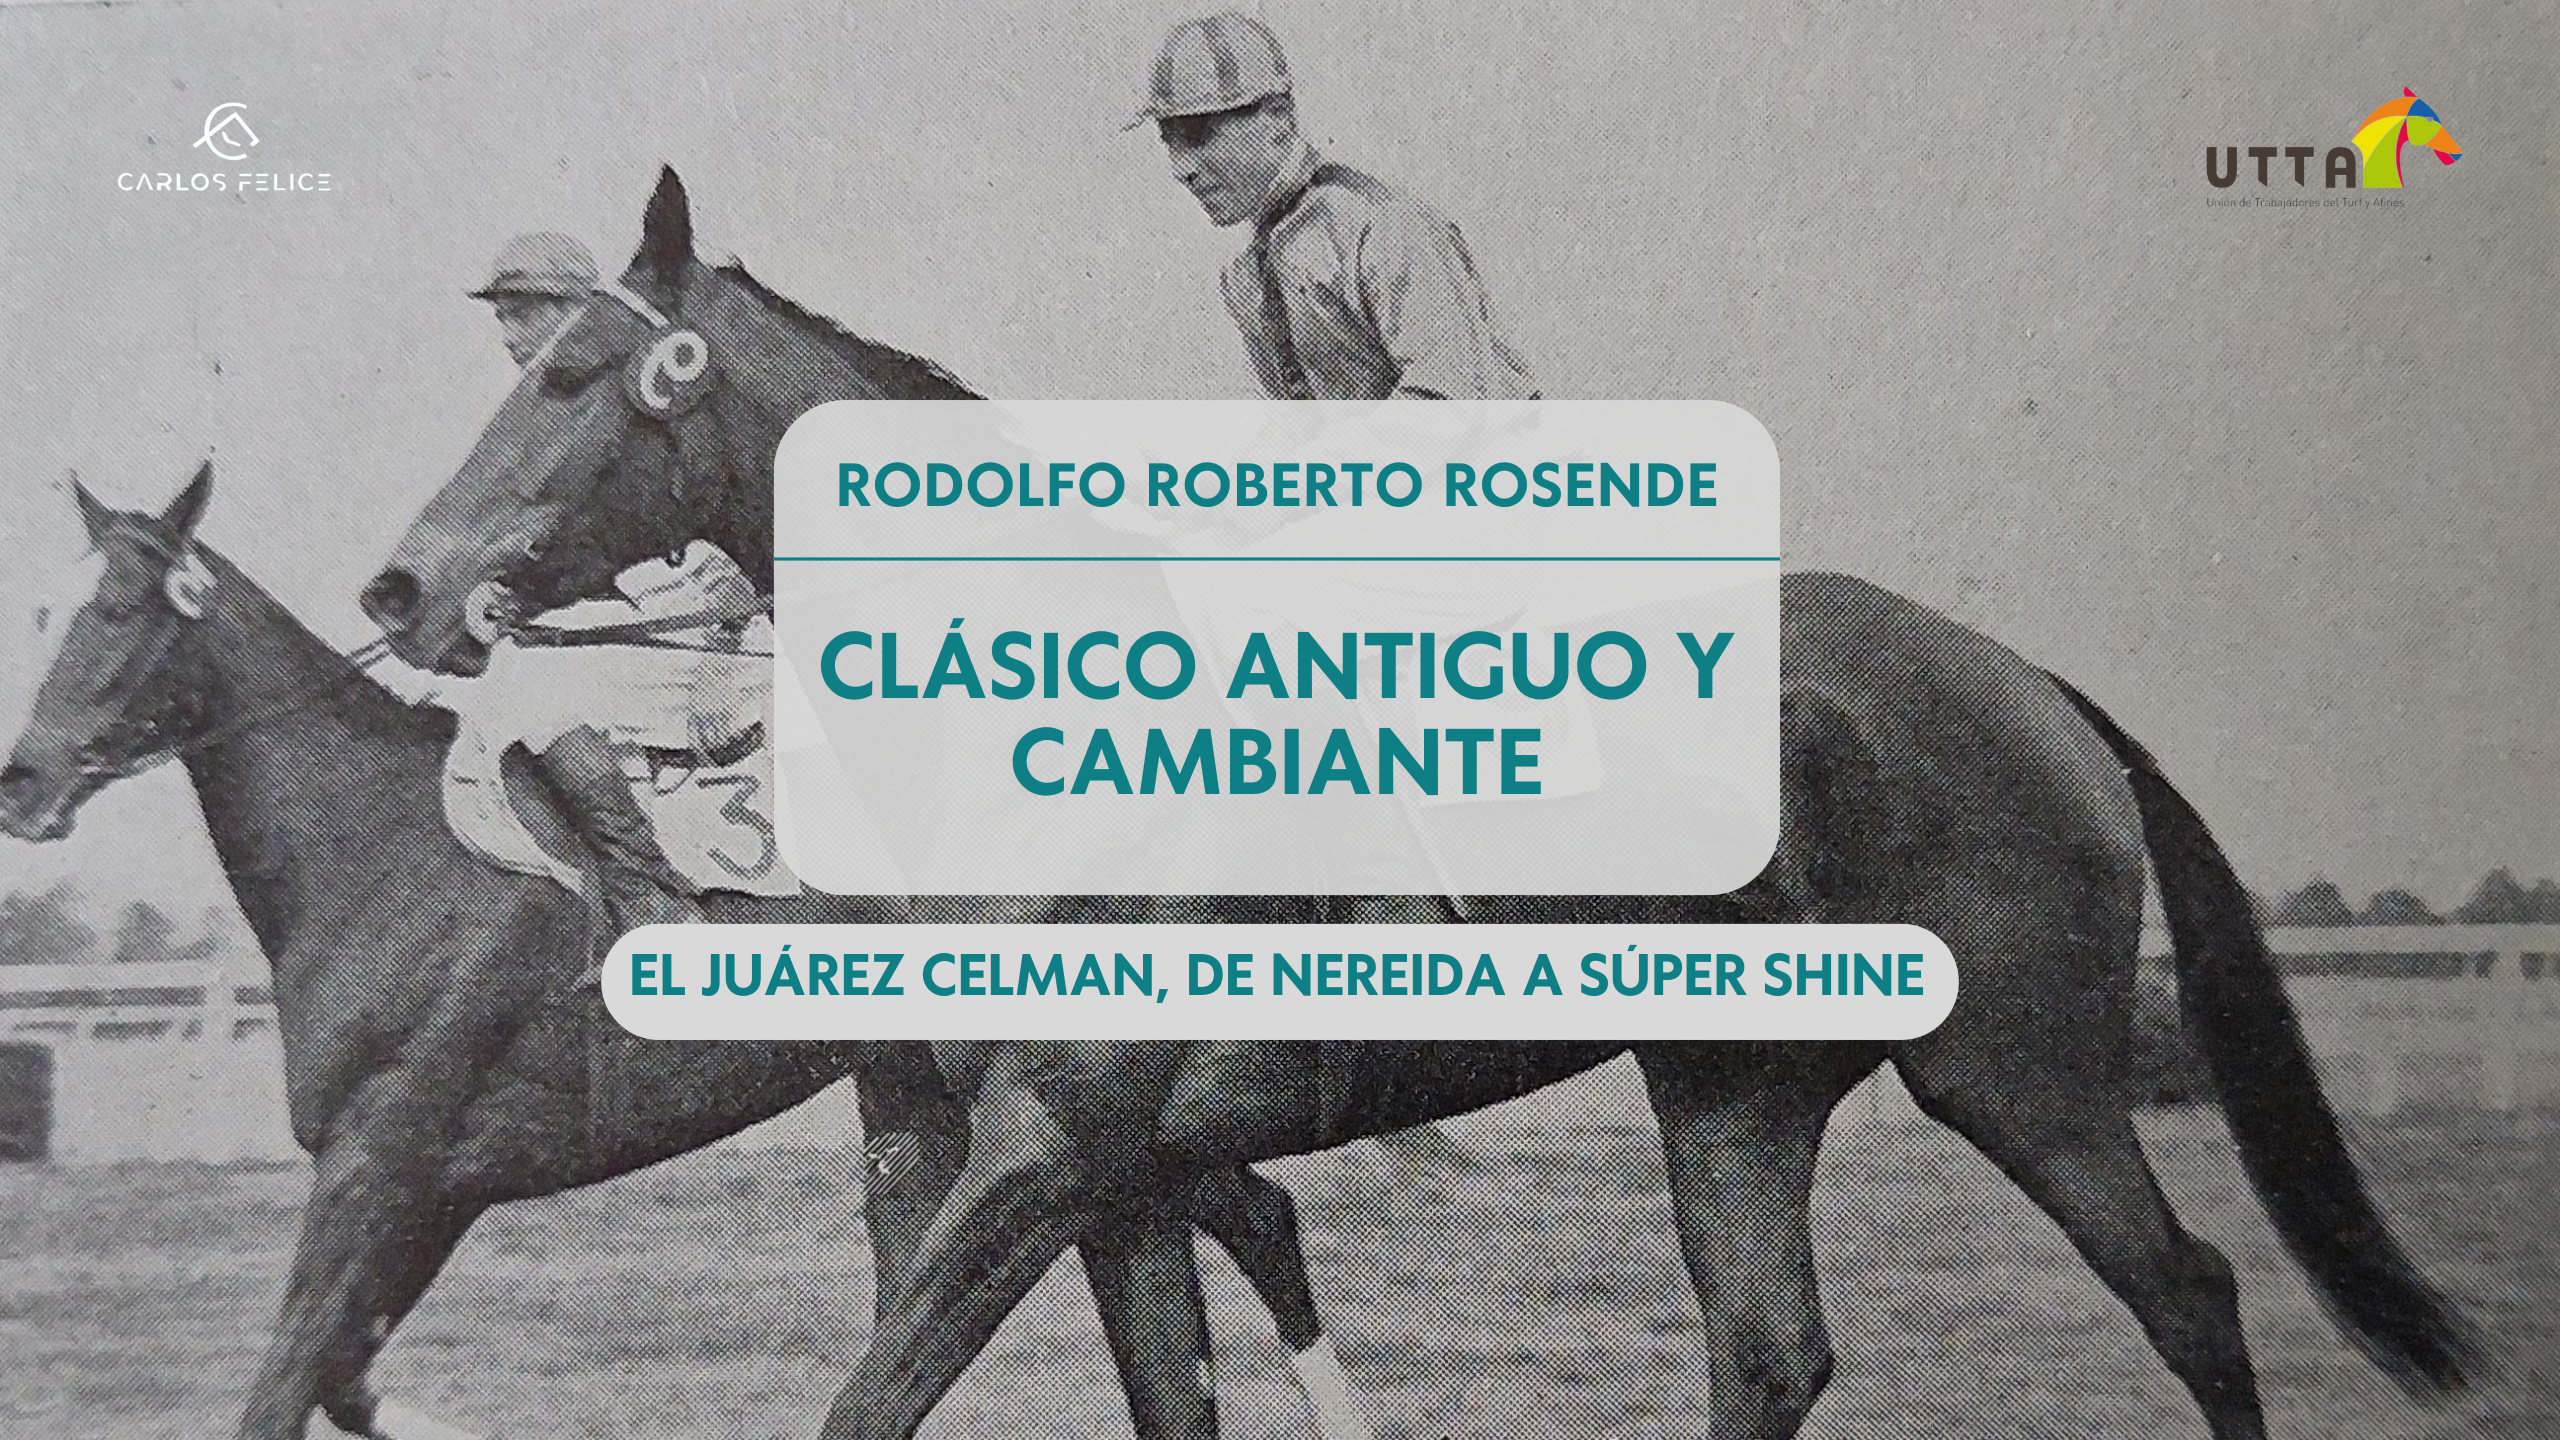 Rodolfo Roberto Rosende: Clásico antiguo y cambiante